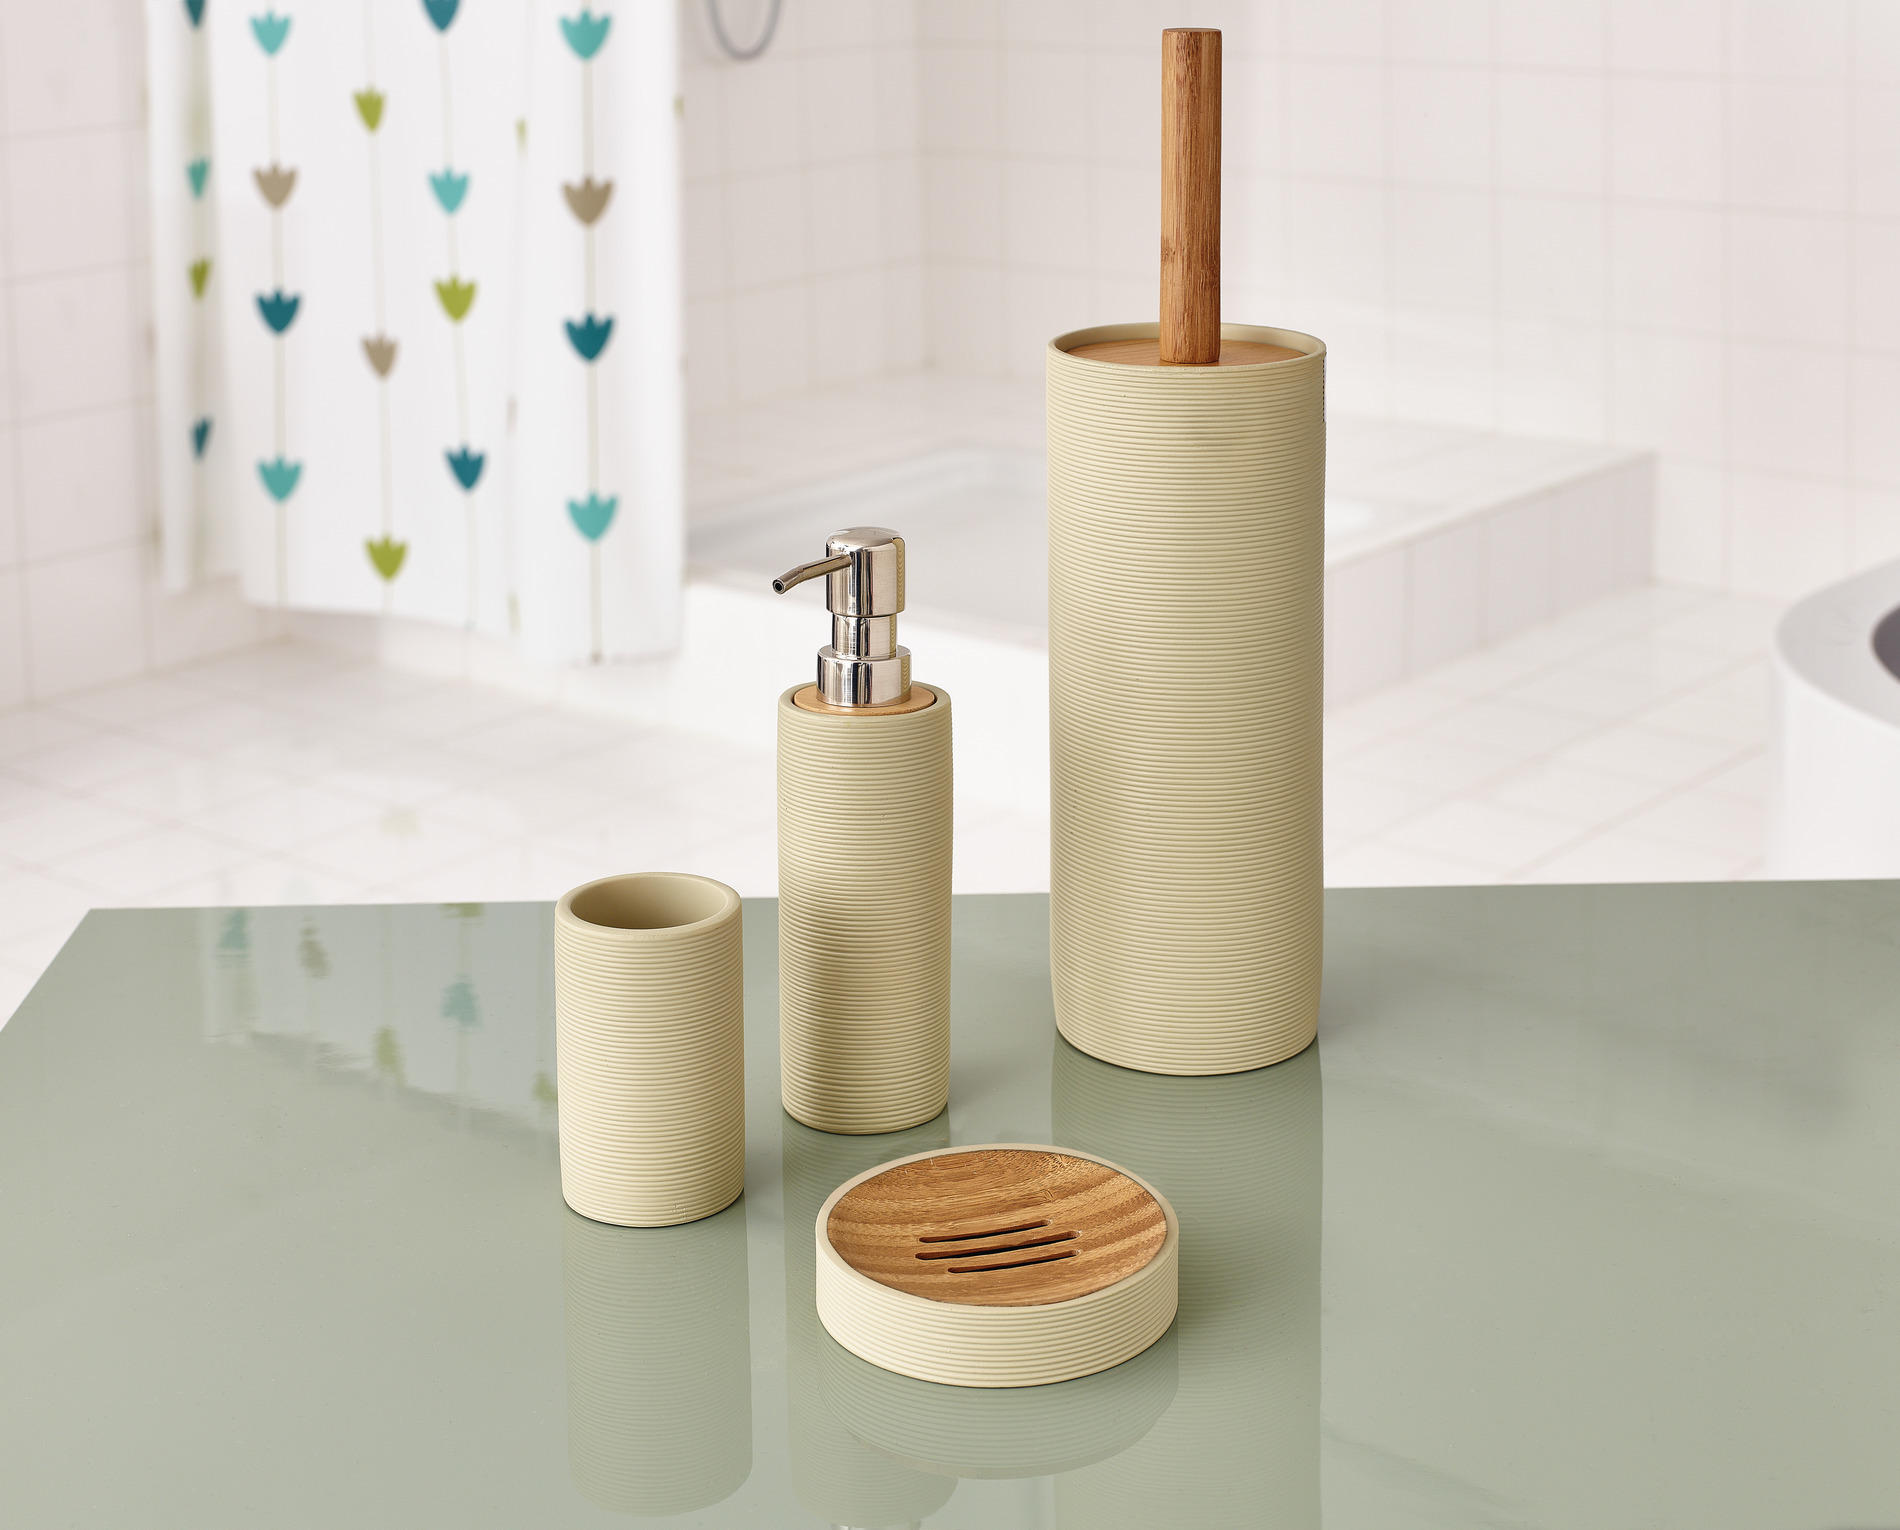 WC SADA - ŠTĚTKA A DRŽÁK - přírodní barvy/béžová, Basics, dřevo/plast (9/38/9cm) - Sadena